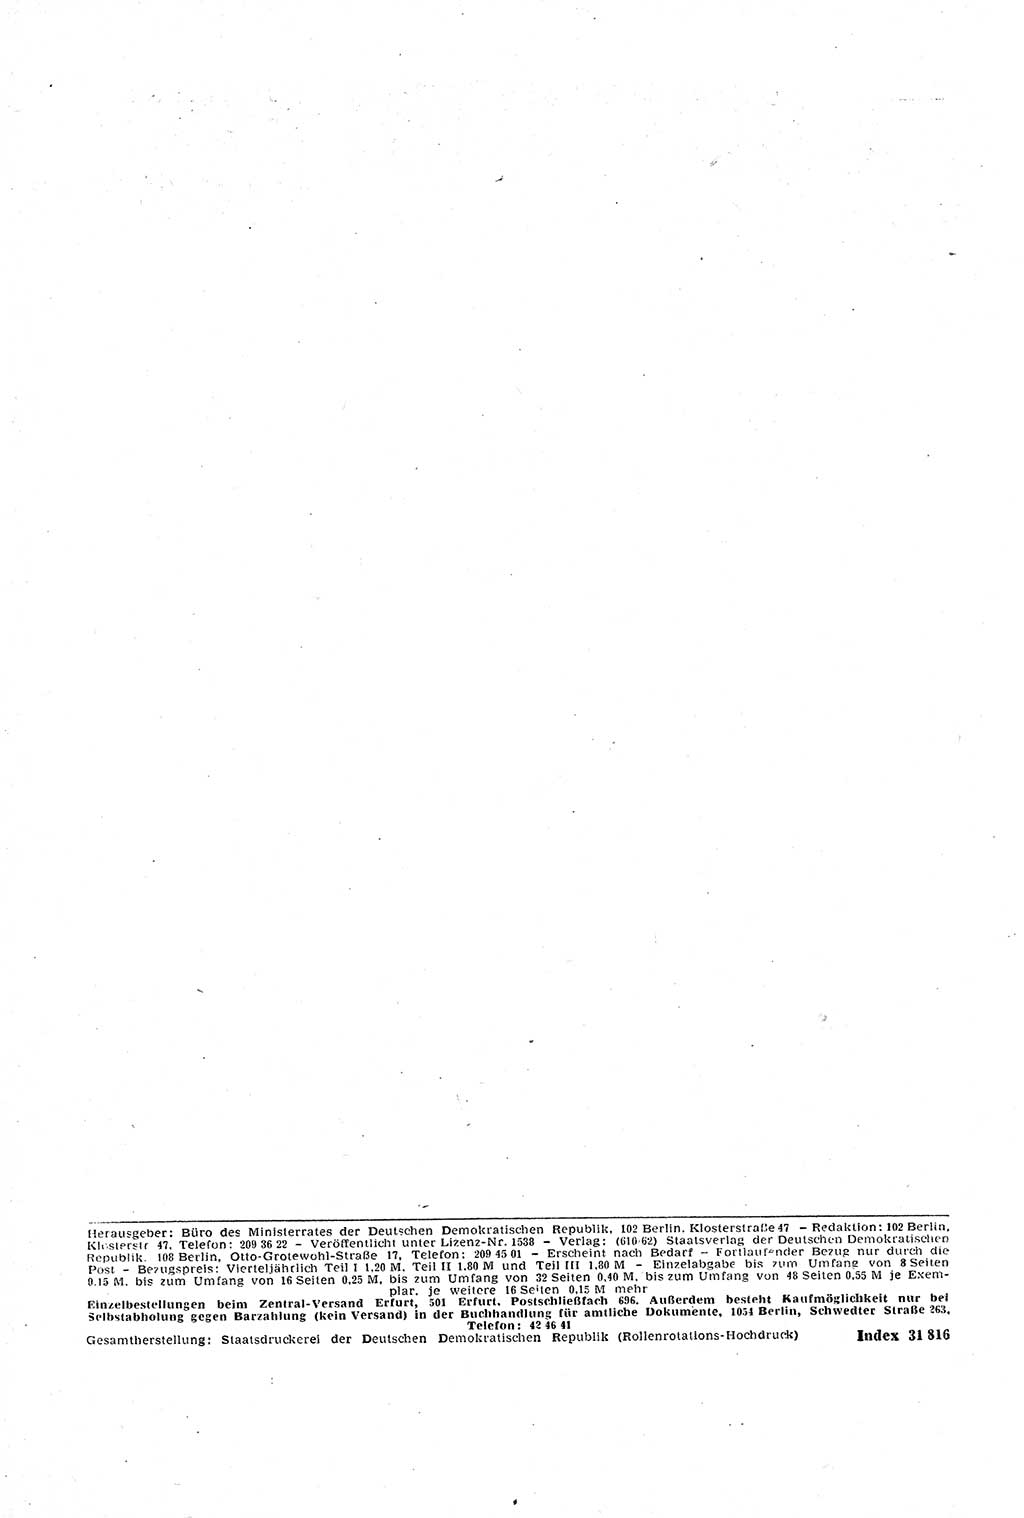 Gesetzblatt (GBl.) der Deutschen Demokratischen Republik (DDR) Teil Ⅰ 1970, Seite 128 (GBl. DDR Ⅰ 1970, S. 128)